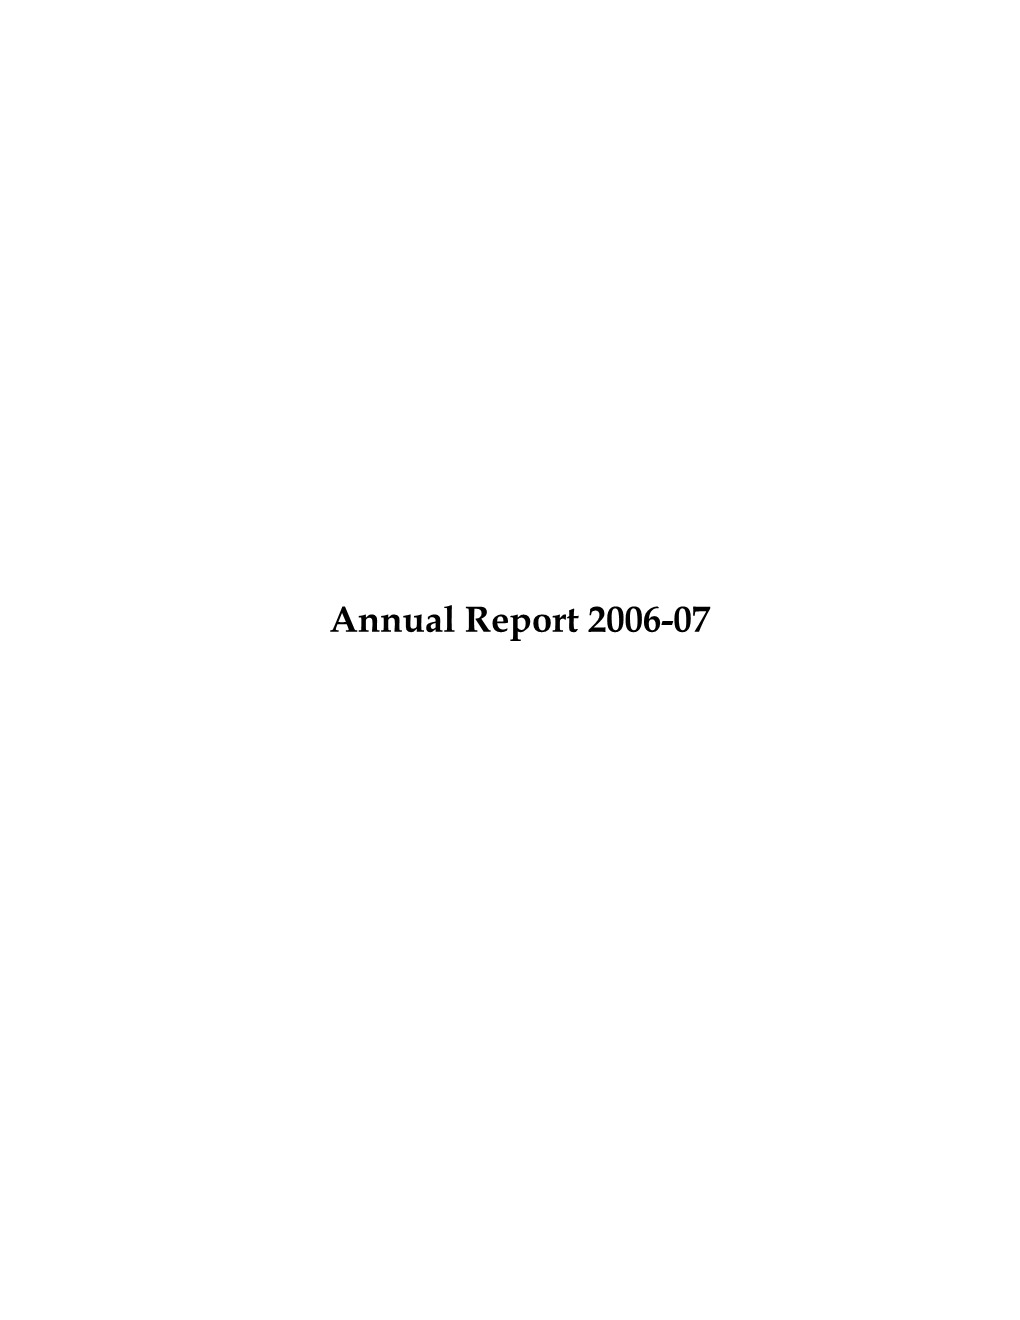 Annual Report 2006-07 Annual Report 2006-2007